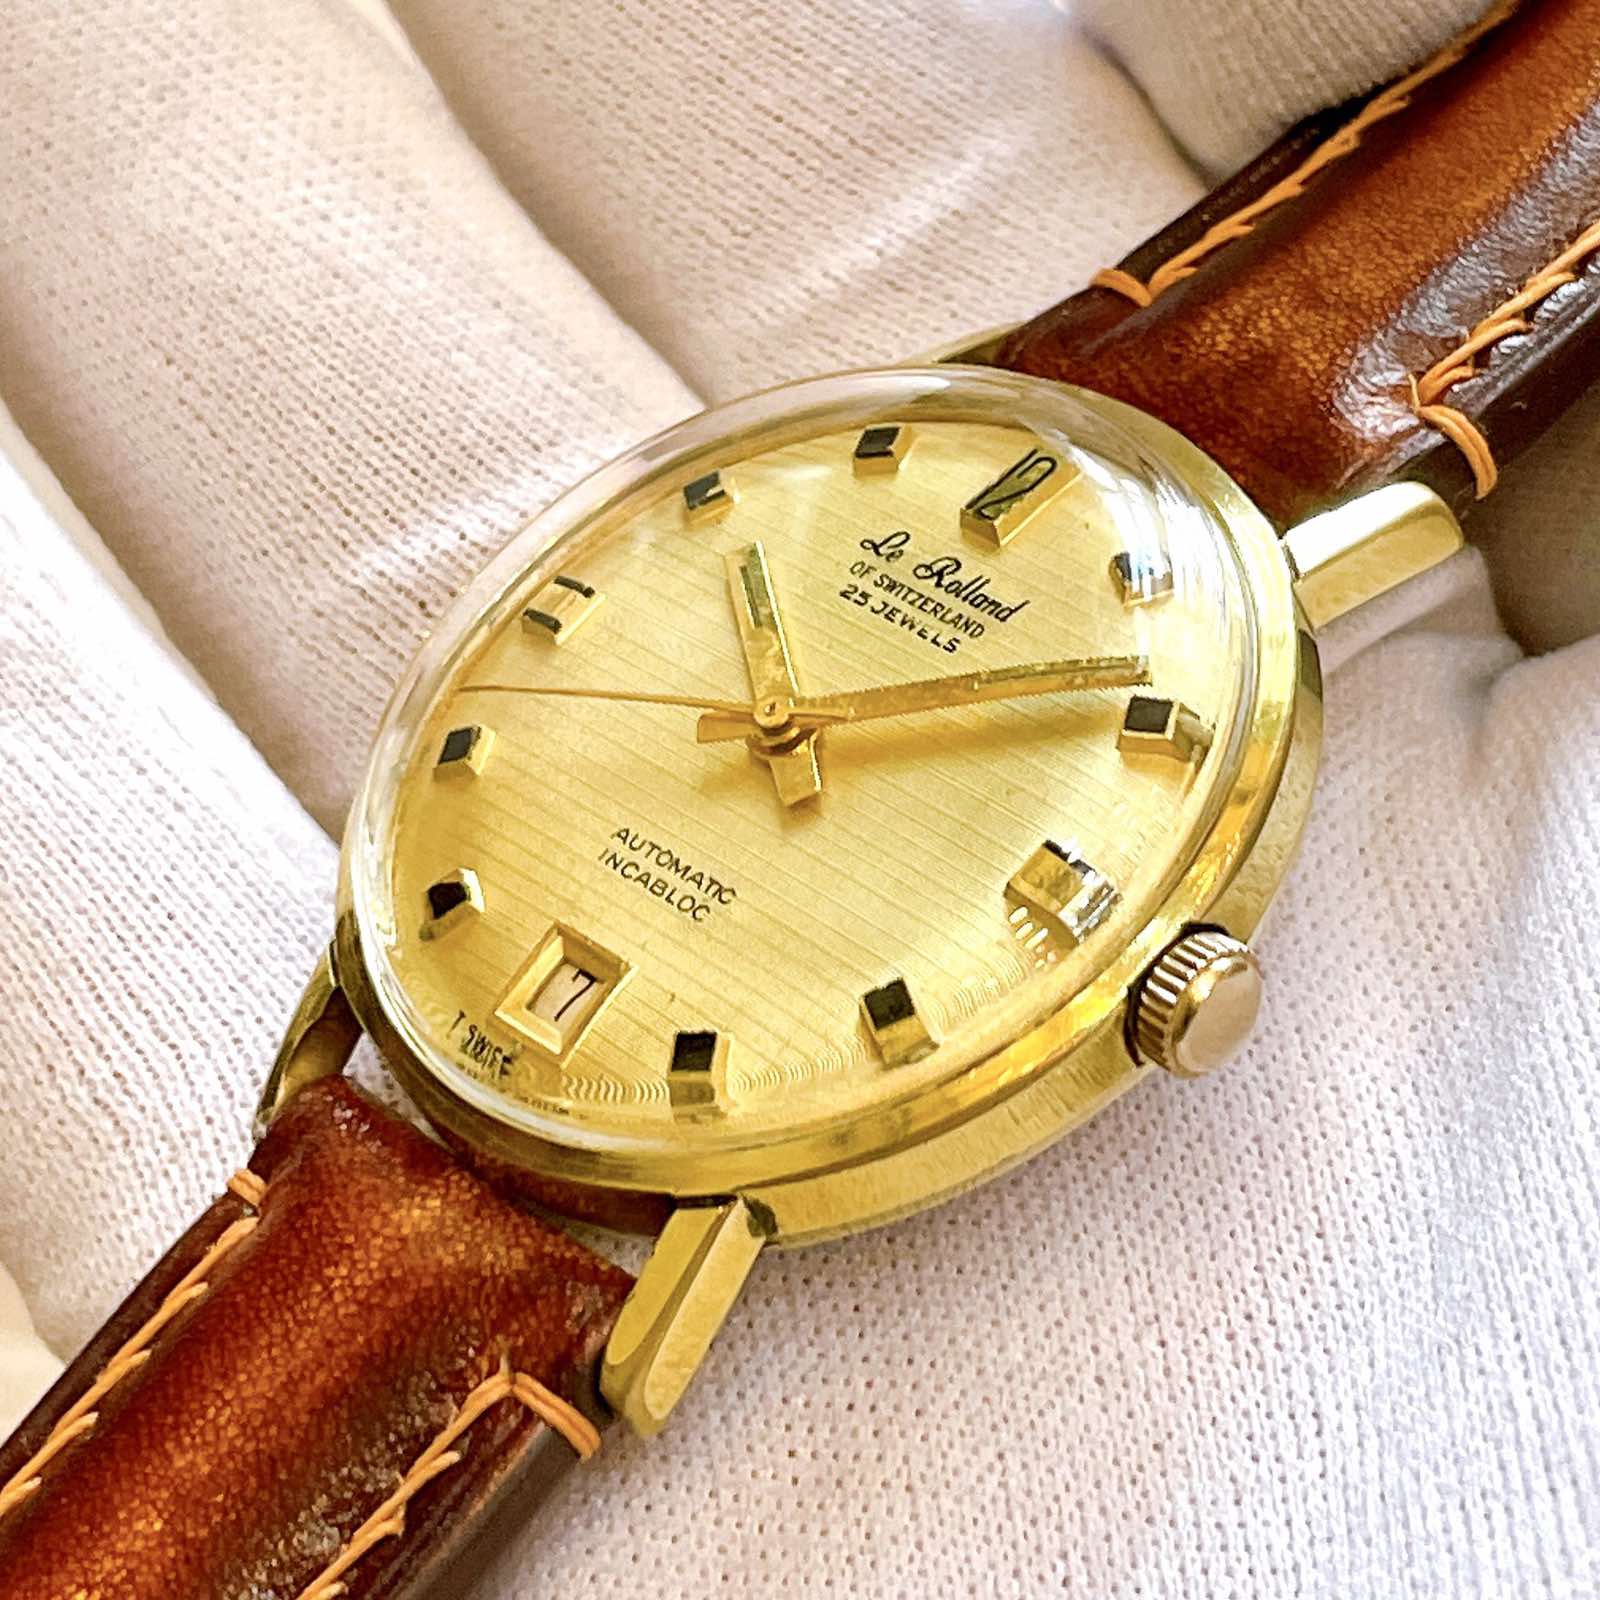 Đồng hồ Le Rolland Automatic lacke vàng 18k chính hãng thụy Sĩ 